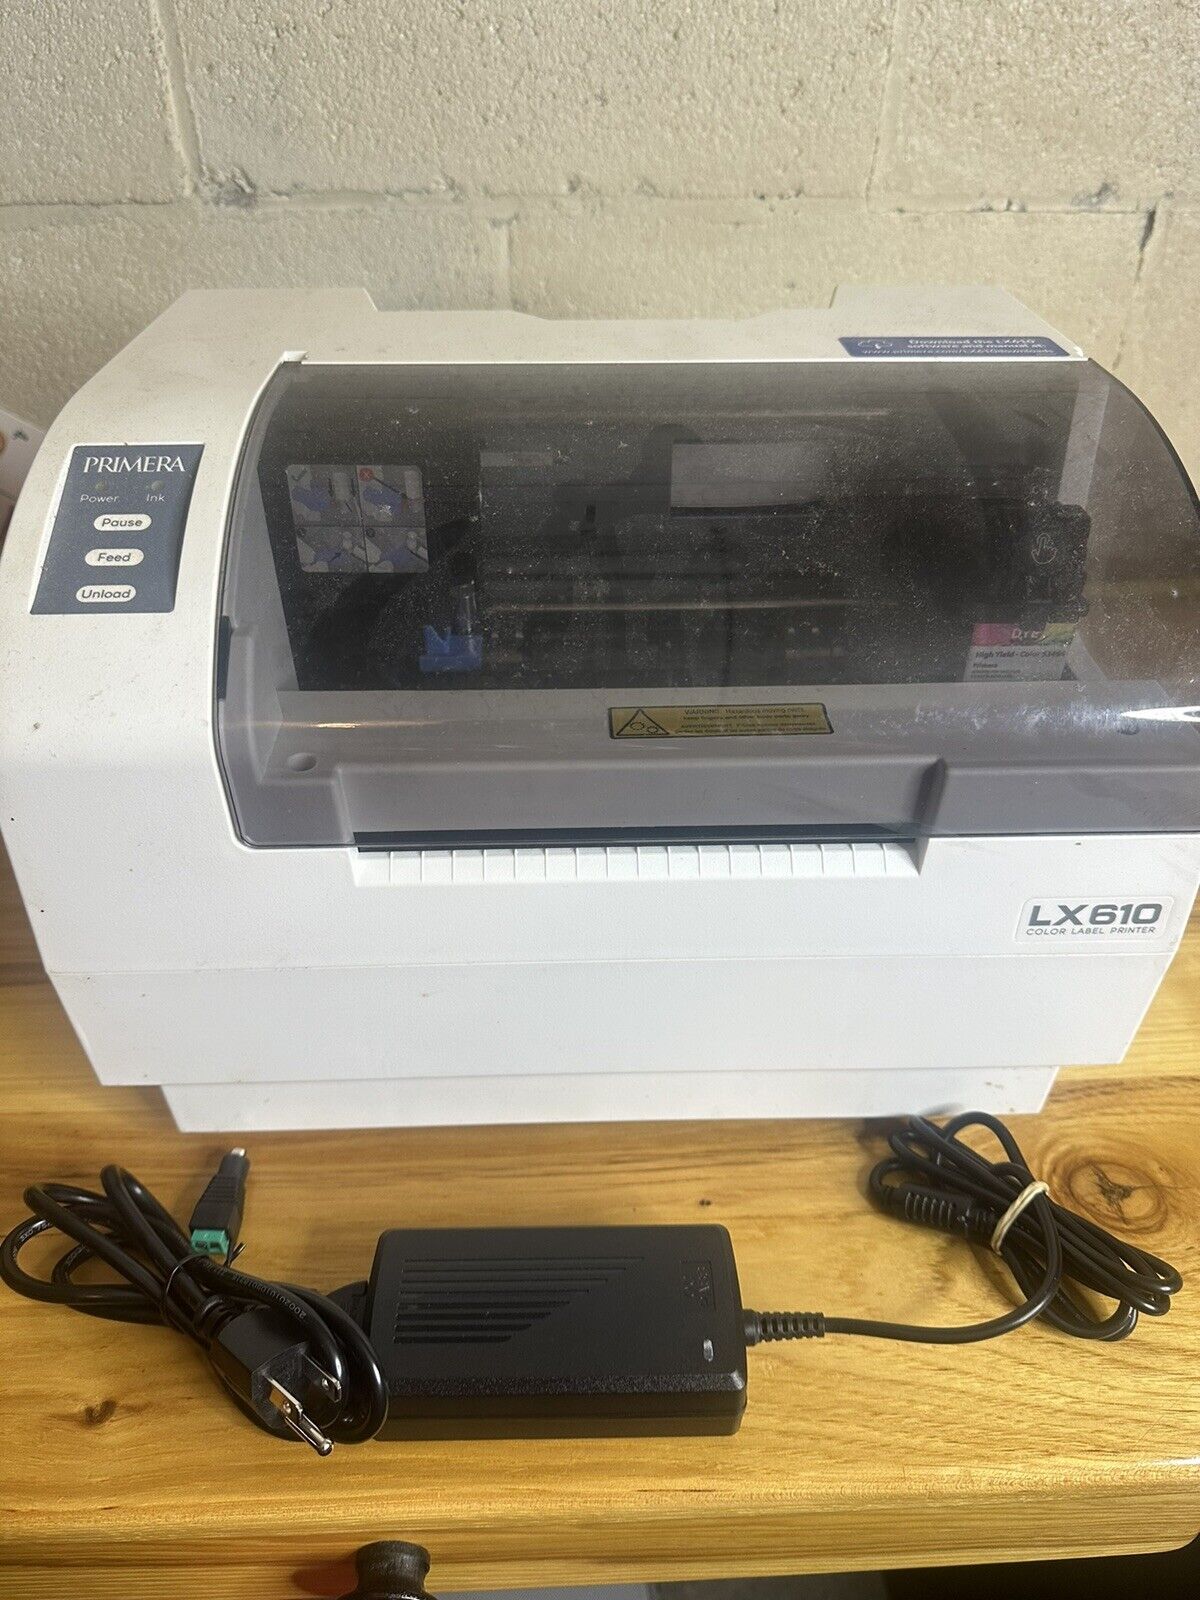 Primera LX610 Color Inkjet Label Printer